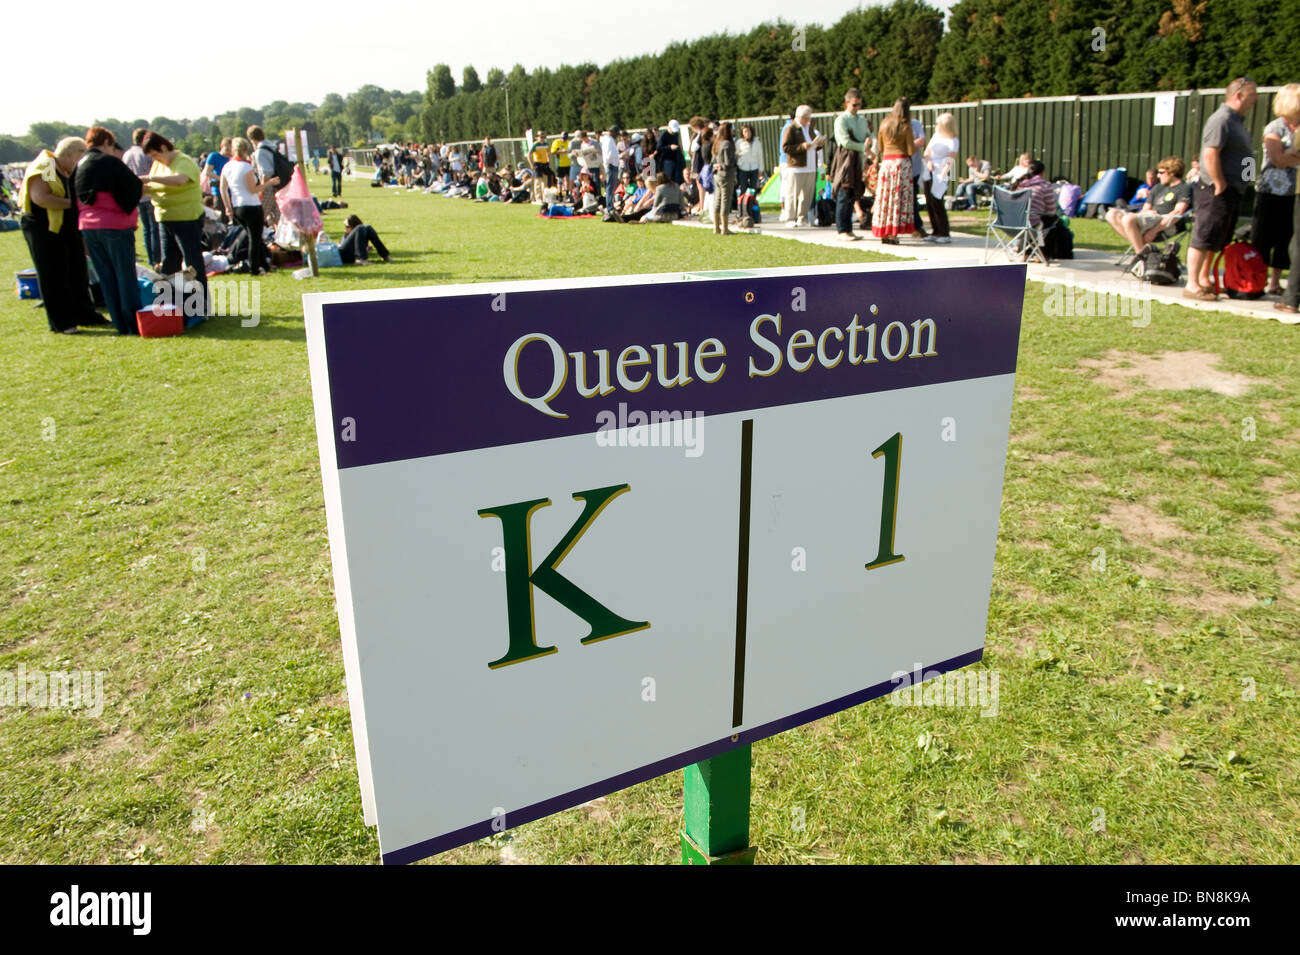 La section file d'ouvrir pendant le parc de Wimbledon Wimbledon Tennis Championships 2010 Banque D'Images